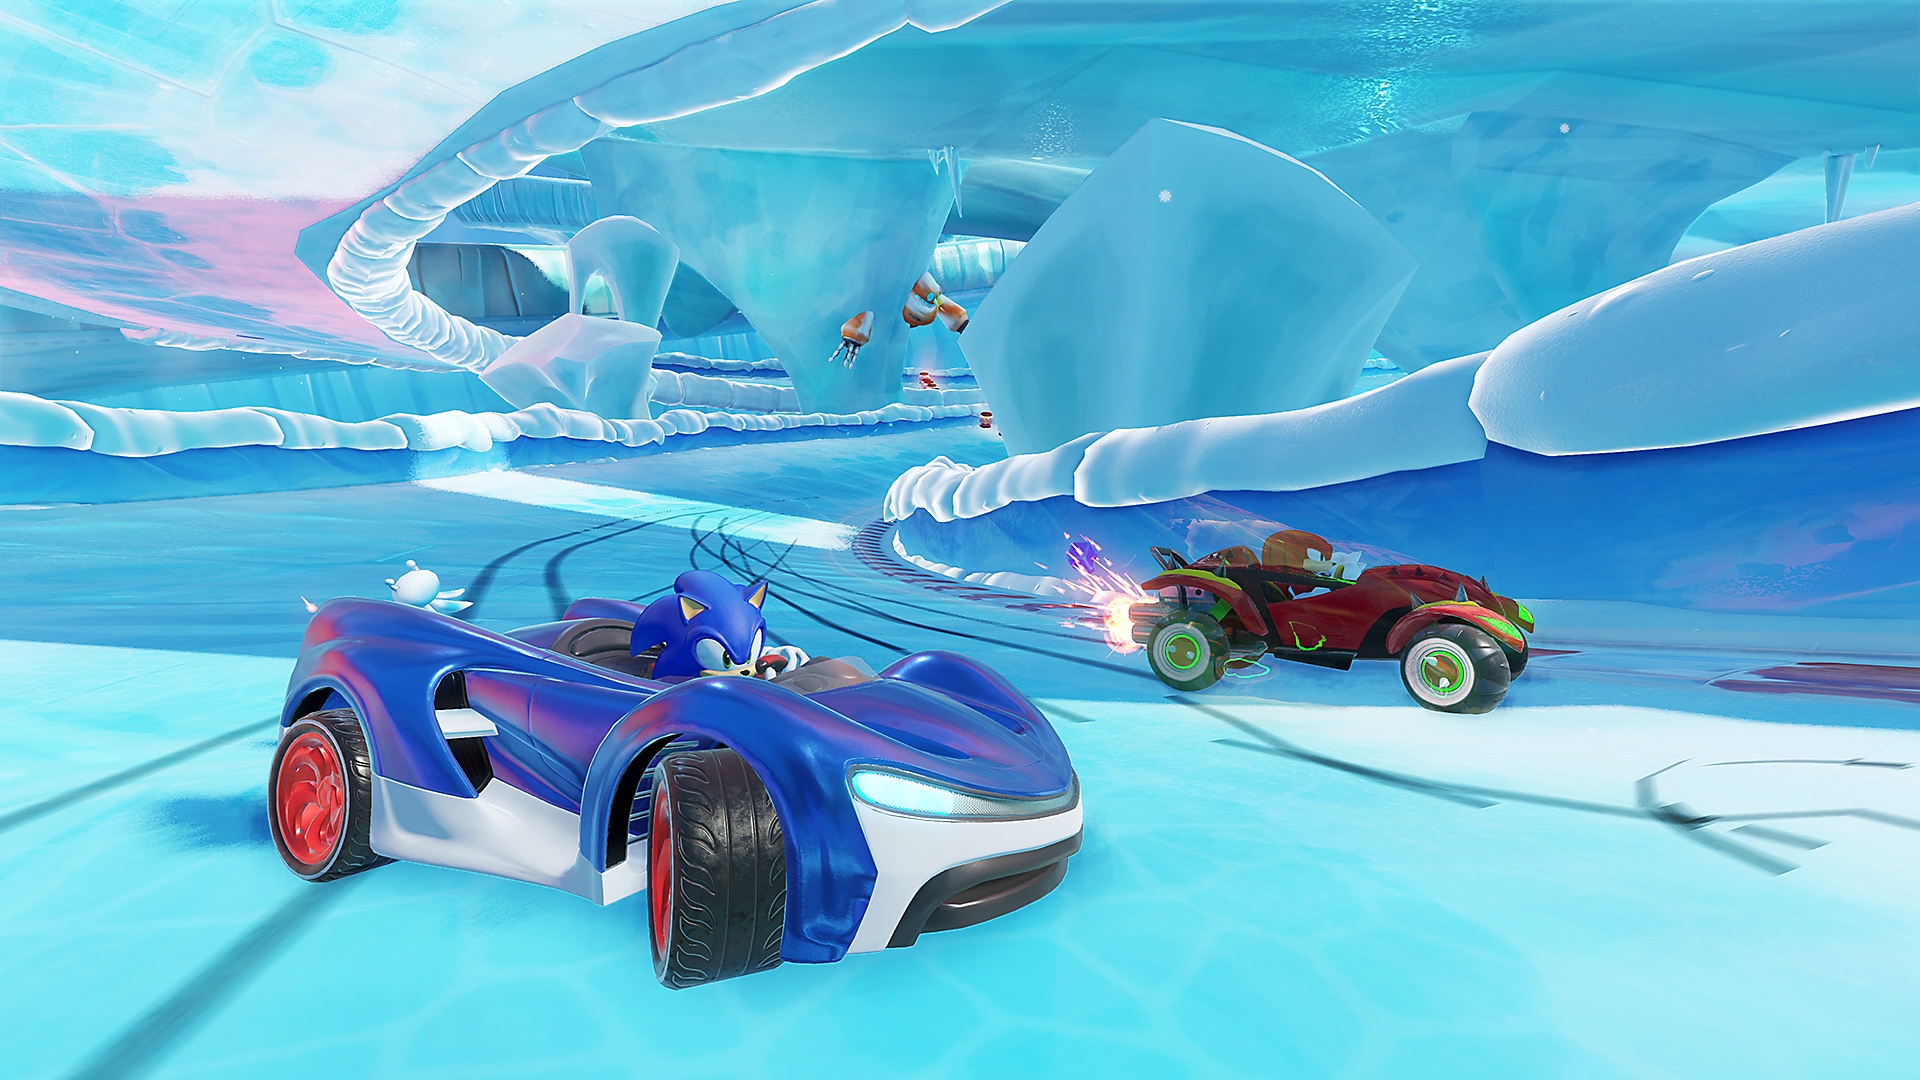 Captura de pantalla de Team Sonic Racing con Sonic al mando de un deportivo azul en un circuito helado